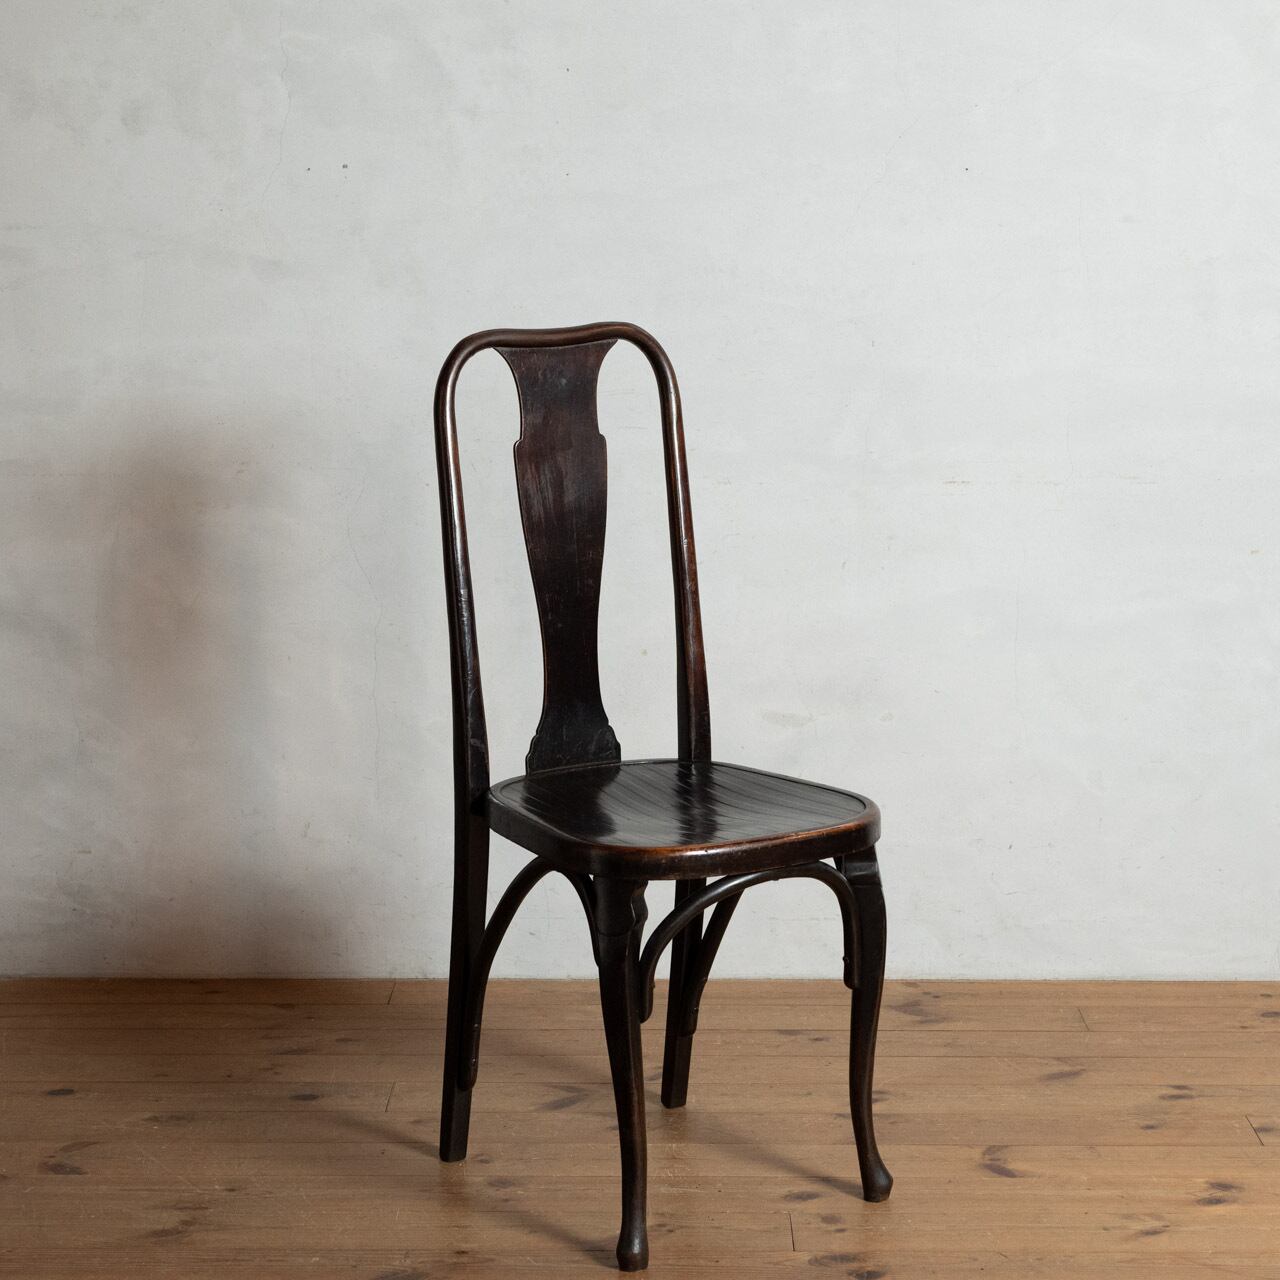 Queen Anne Bentwood Chair / クイーンアンベントウッドチェア 【A